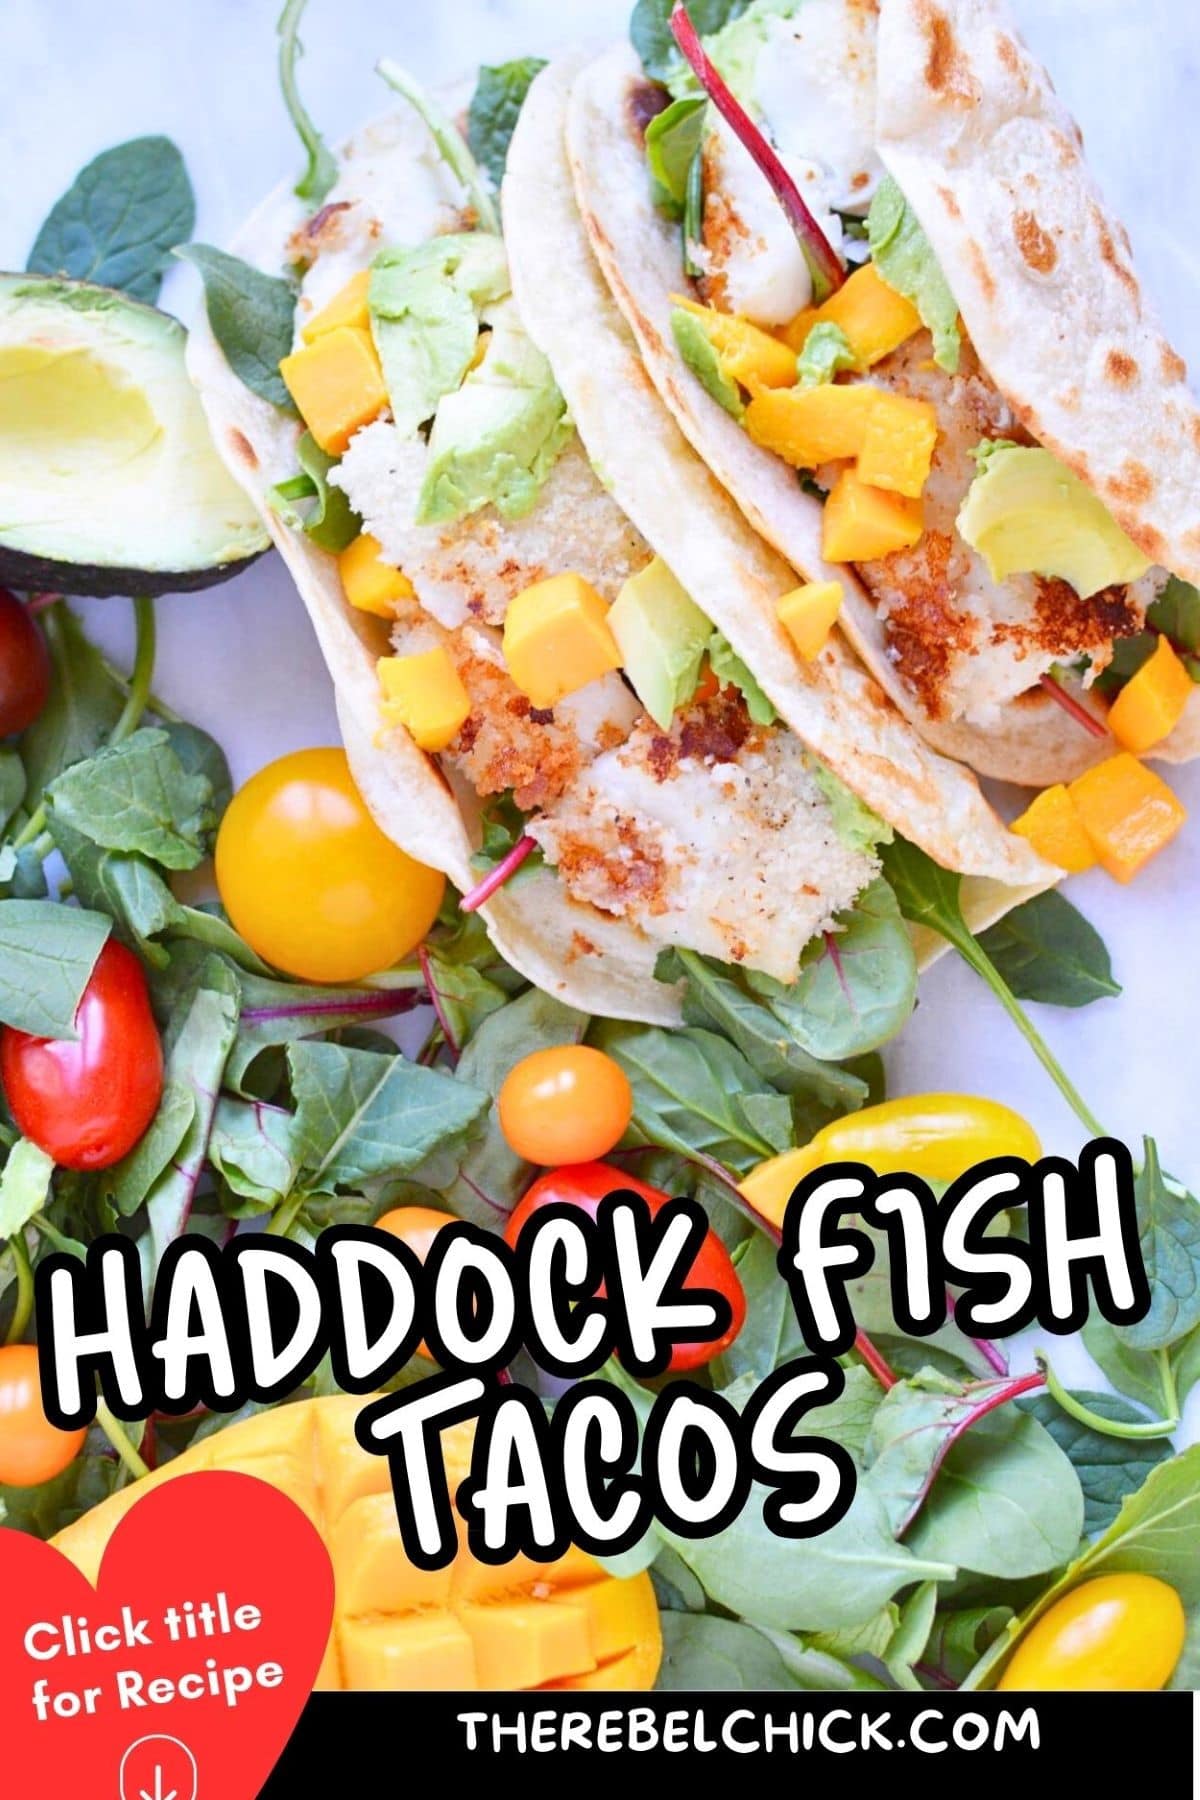 Haddock Fish Tacos